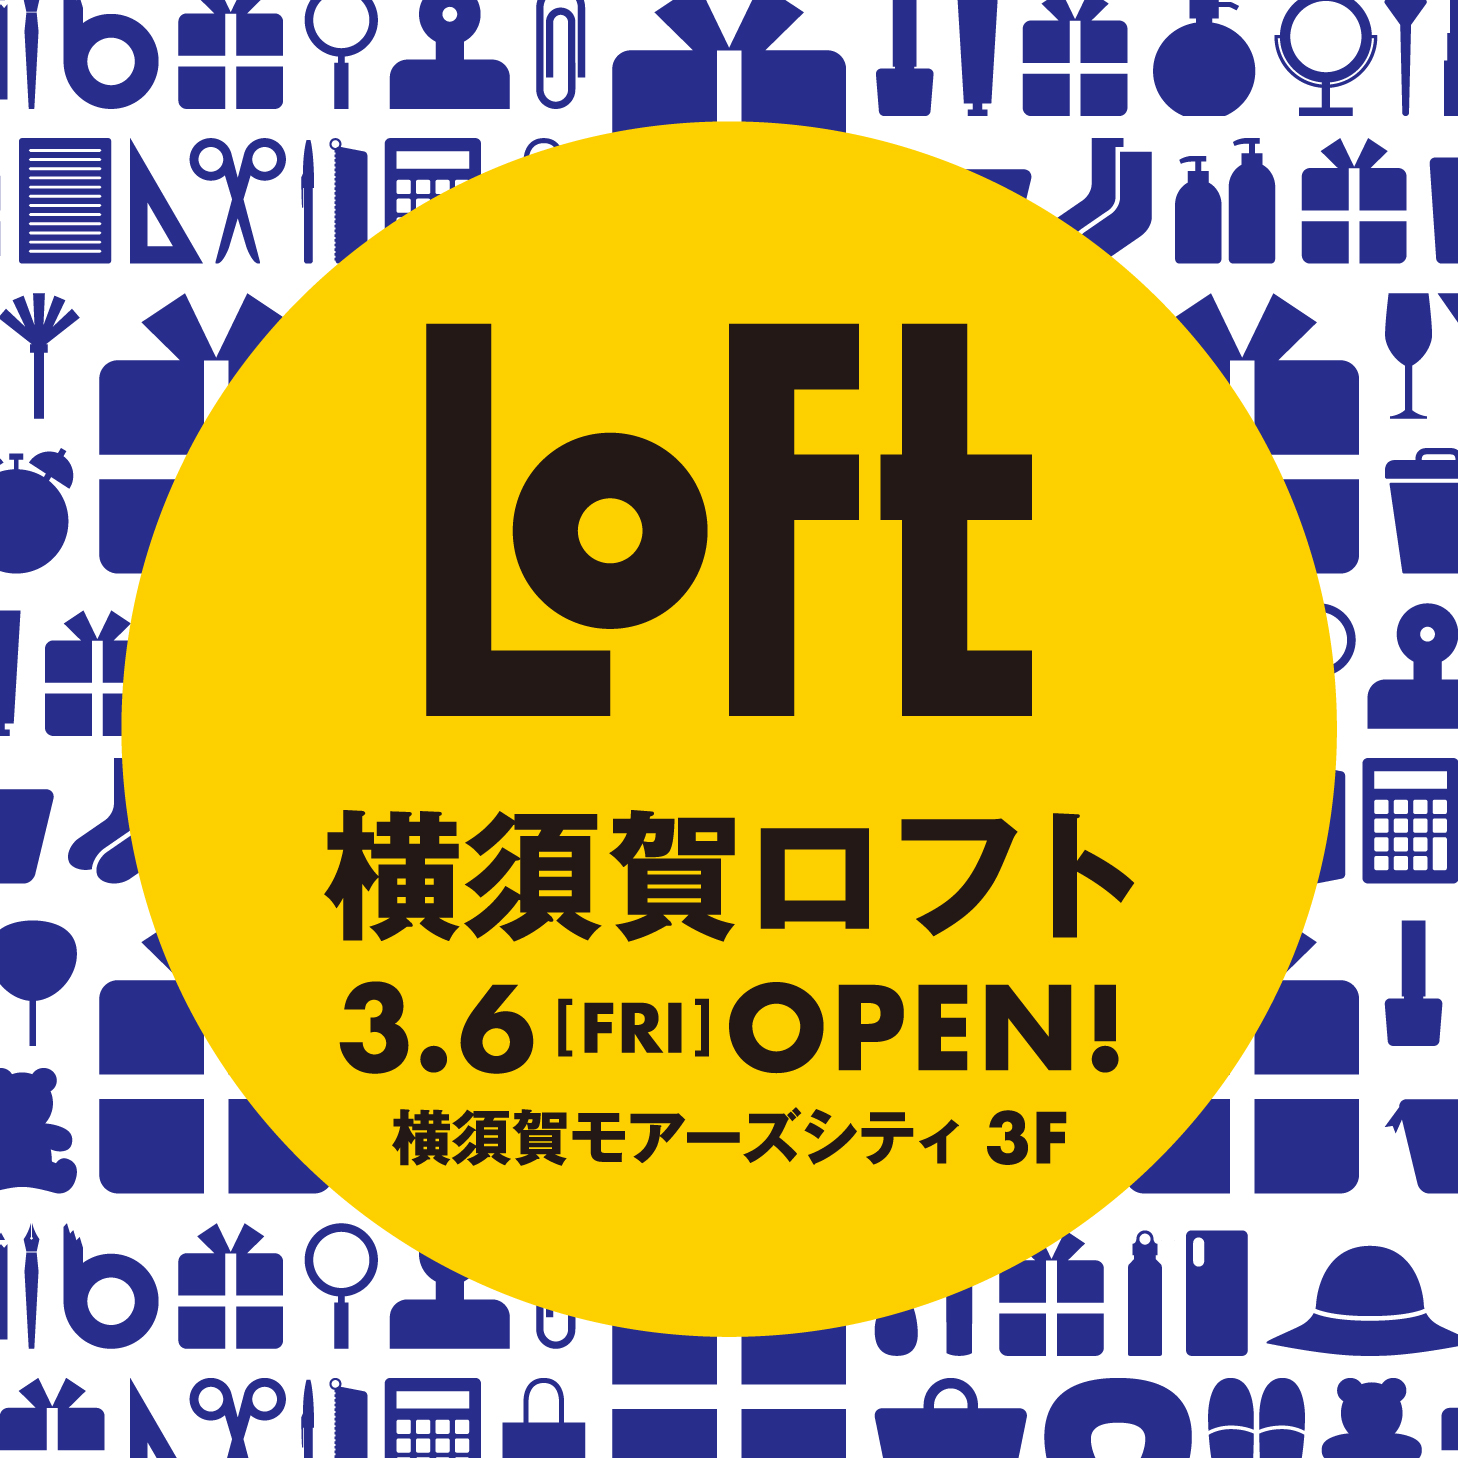 ロフト 横須賀初 地域一番店に 3 6 金 横須賀ロフトオープン 株式会社ロフトのプレスリリース